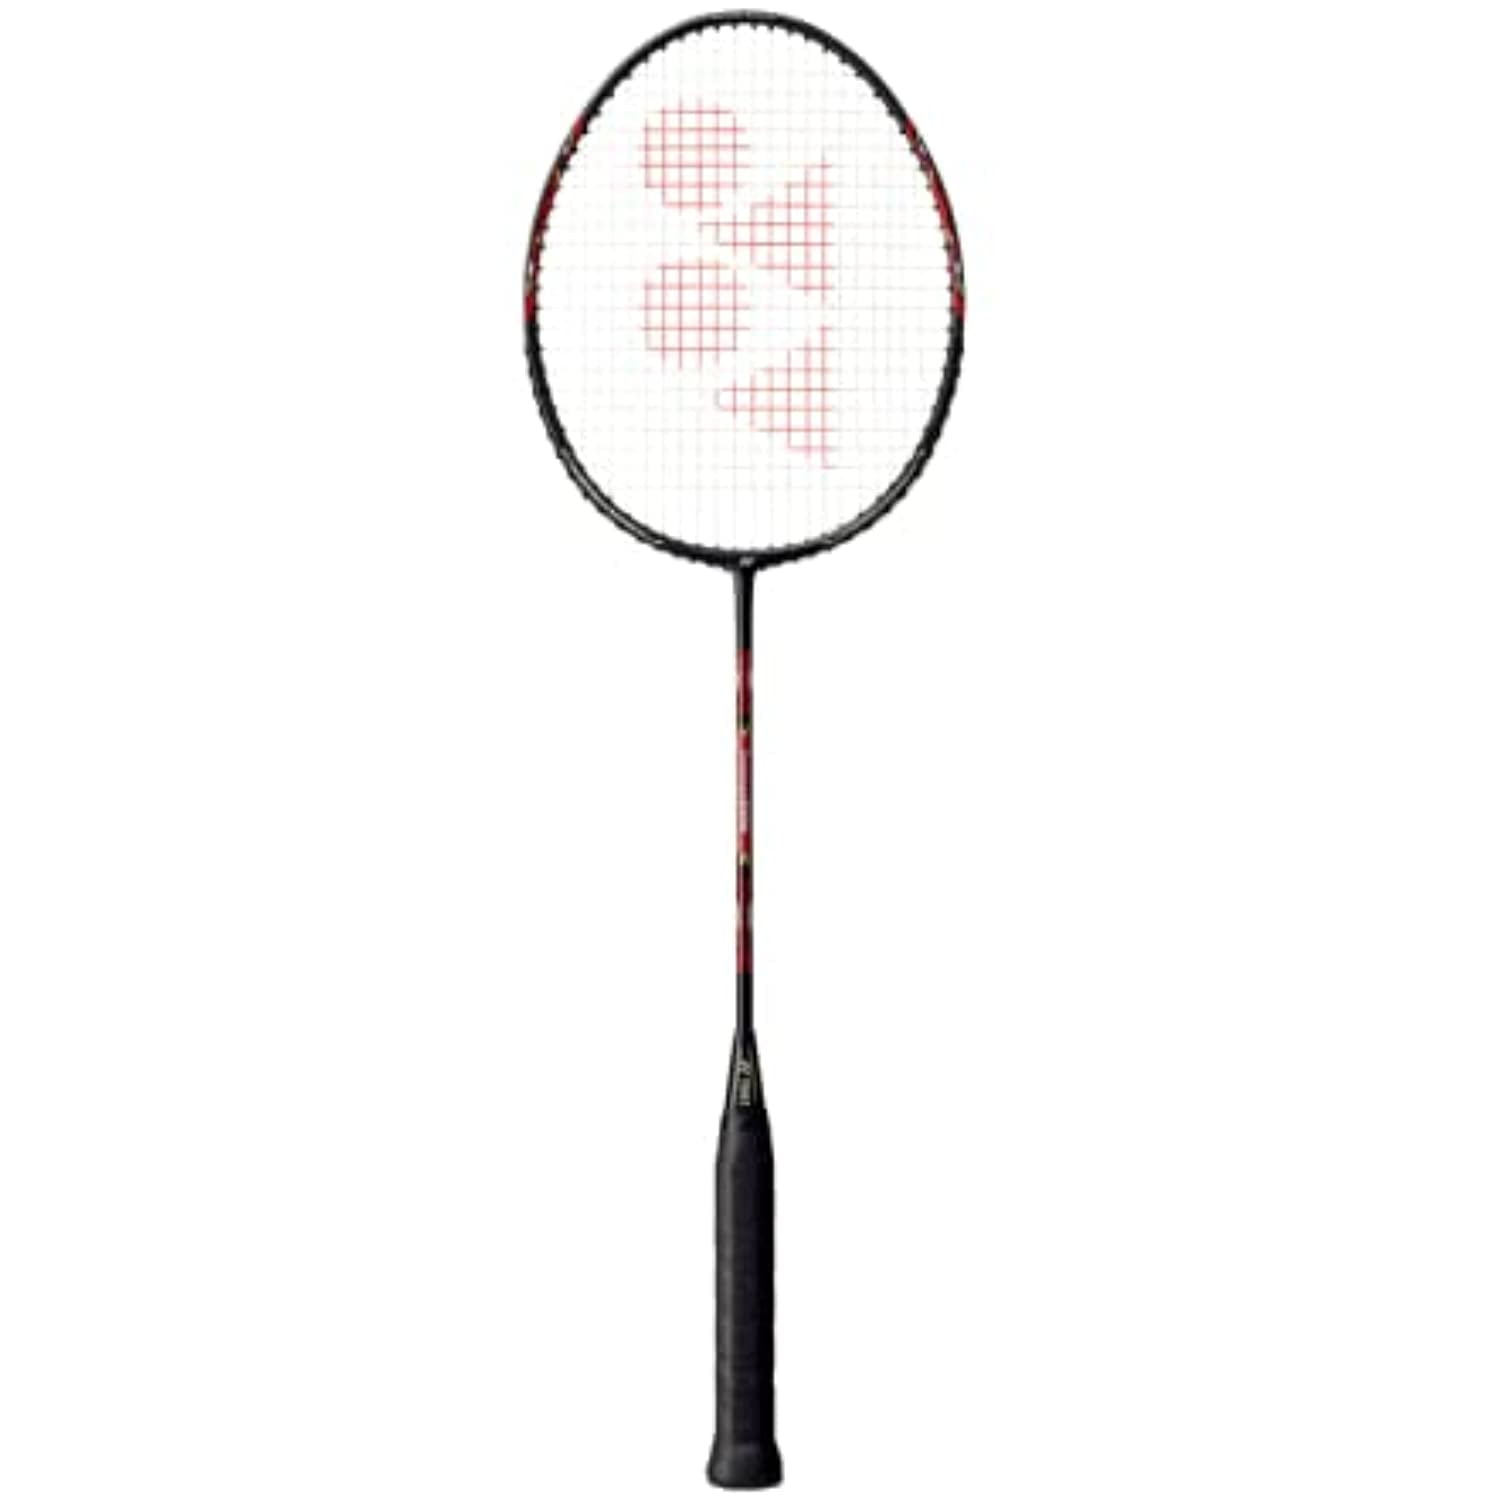 Set of 2 Pcs Good Quality Yonex Carbonex 8000 Plus Badminton Racquet 